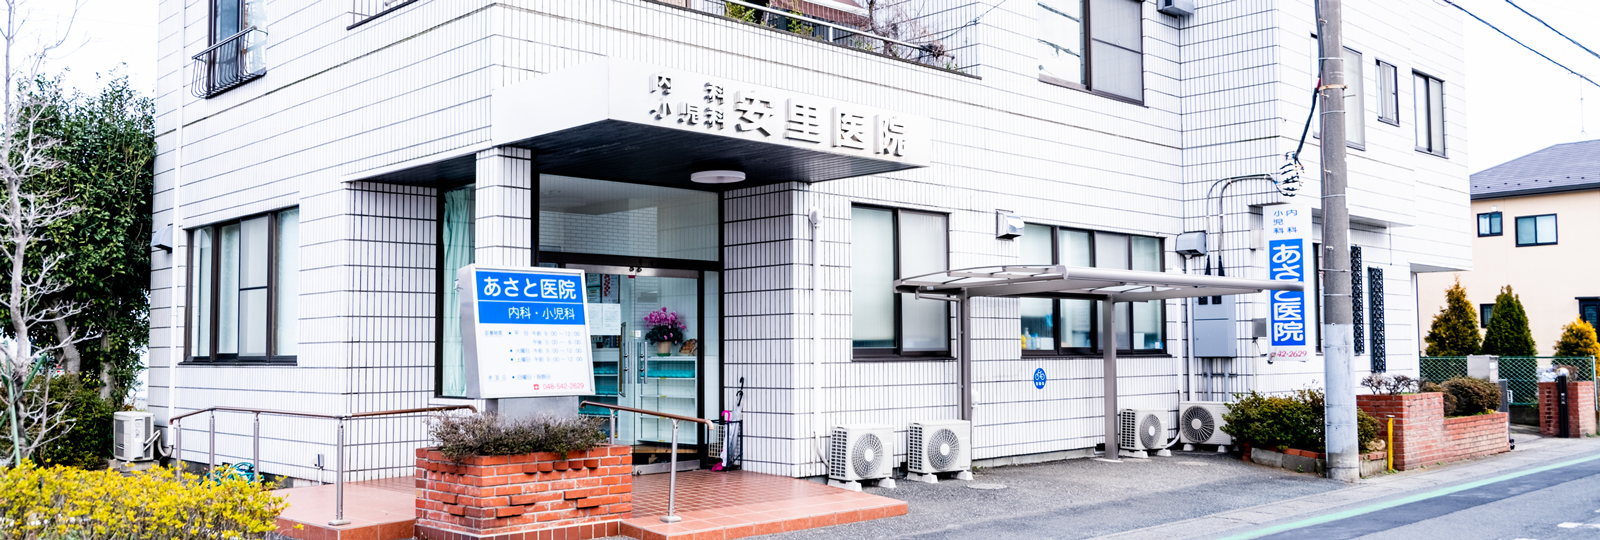 あさと医院(安里医院)｜あさと医院は埼玉県北本市の内科・小児科医院です。北本市、鴻巣市、桶川市、上尾市 、伊奈町等近隣の皆様のホームドクターとして患者様に合わせた医療を提供していきます。